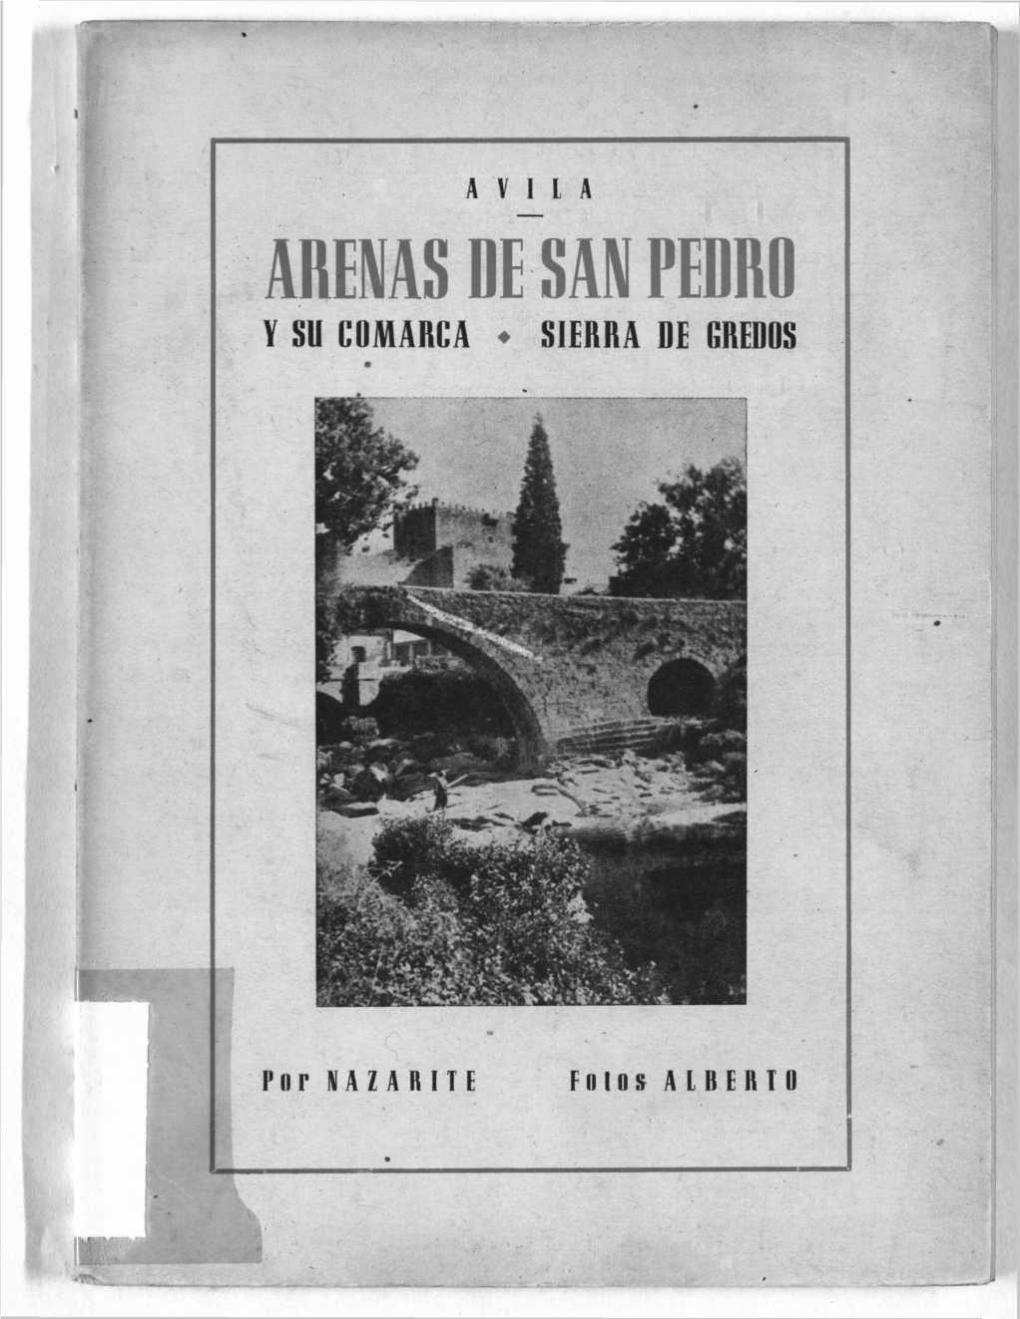 Arenas De San Pedro Y Su Comarca • Sierra De Credos